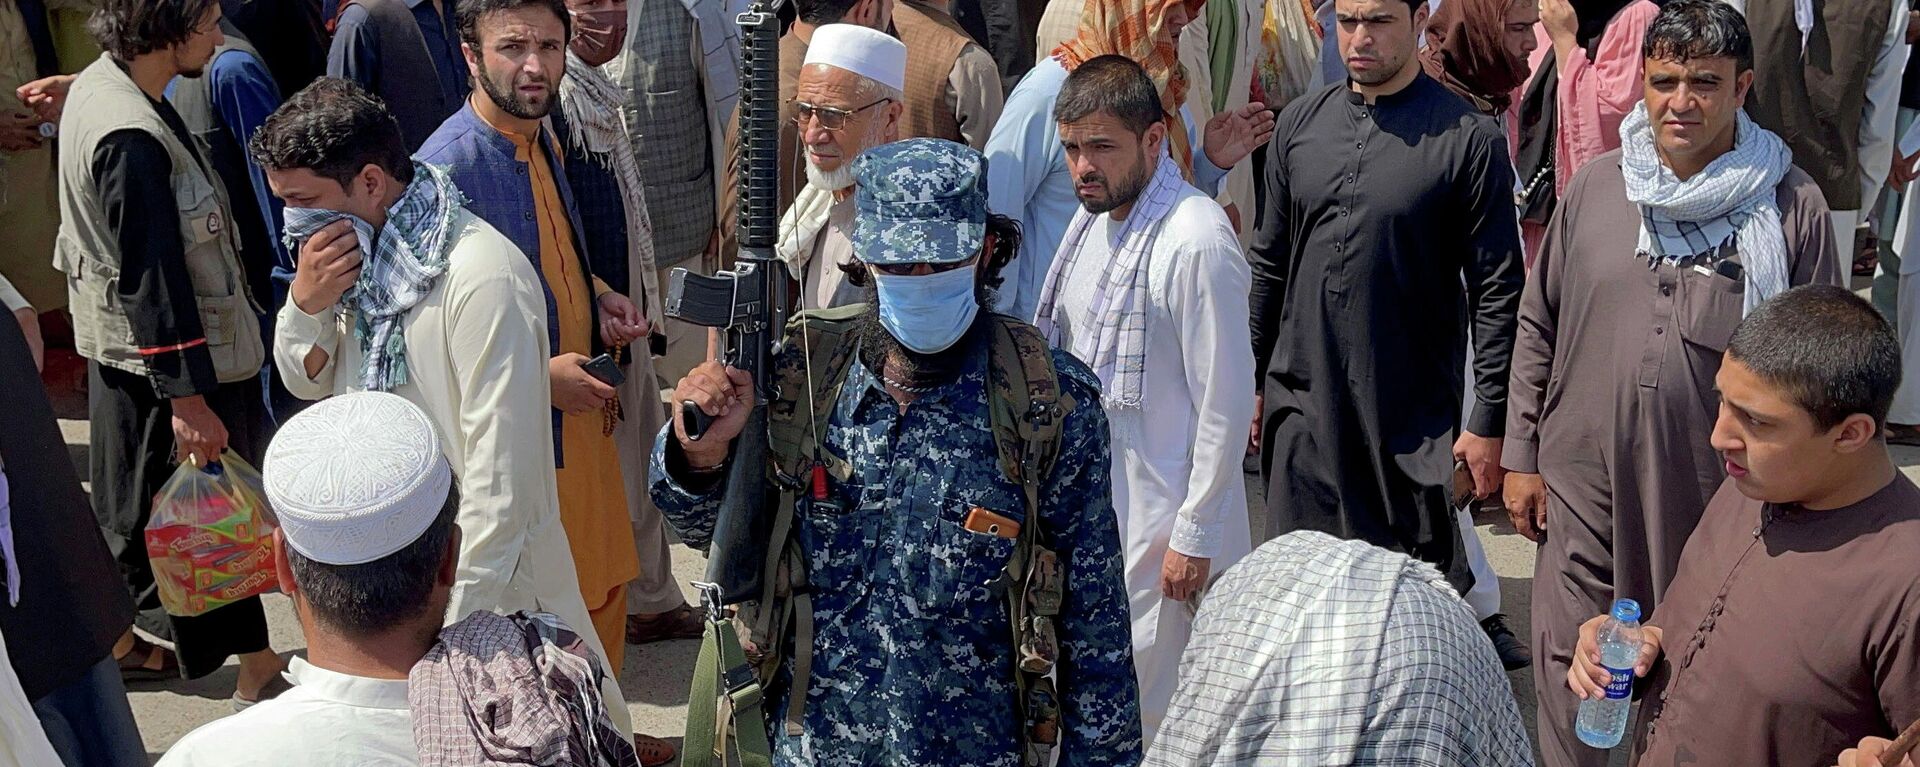 Un miembro de las fuerzas de seguridad talibanes hace la guardia en Kabul, Afganistán, 4 de septiembre de 2021 - Sputnik Mundo, 1920, 21.09.2021